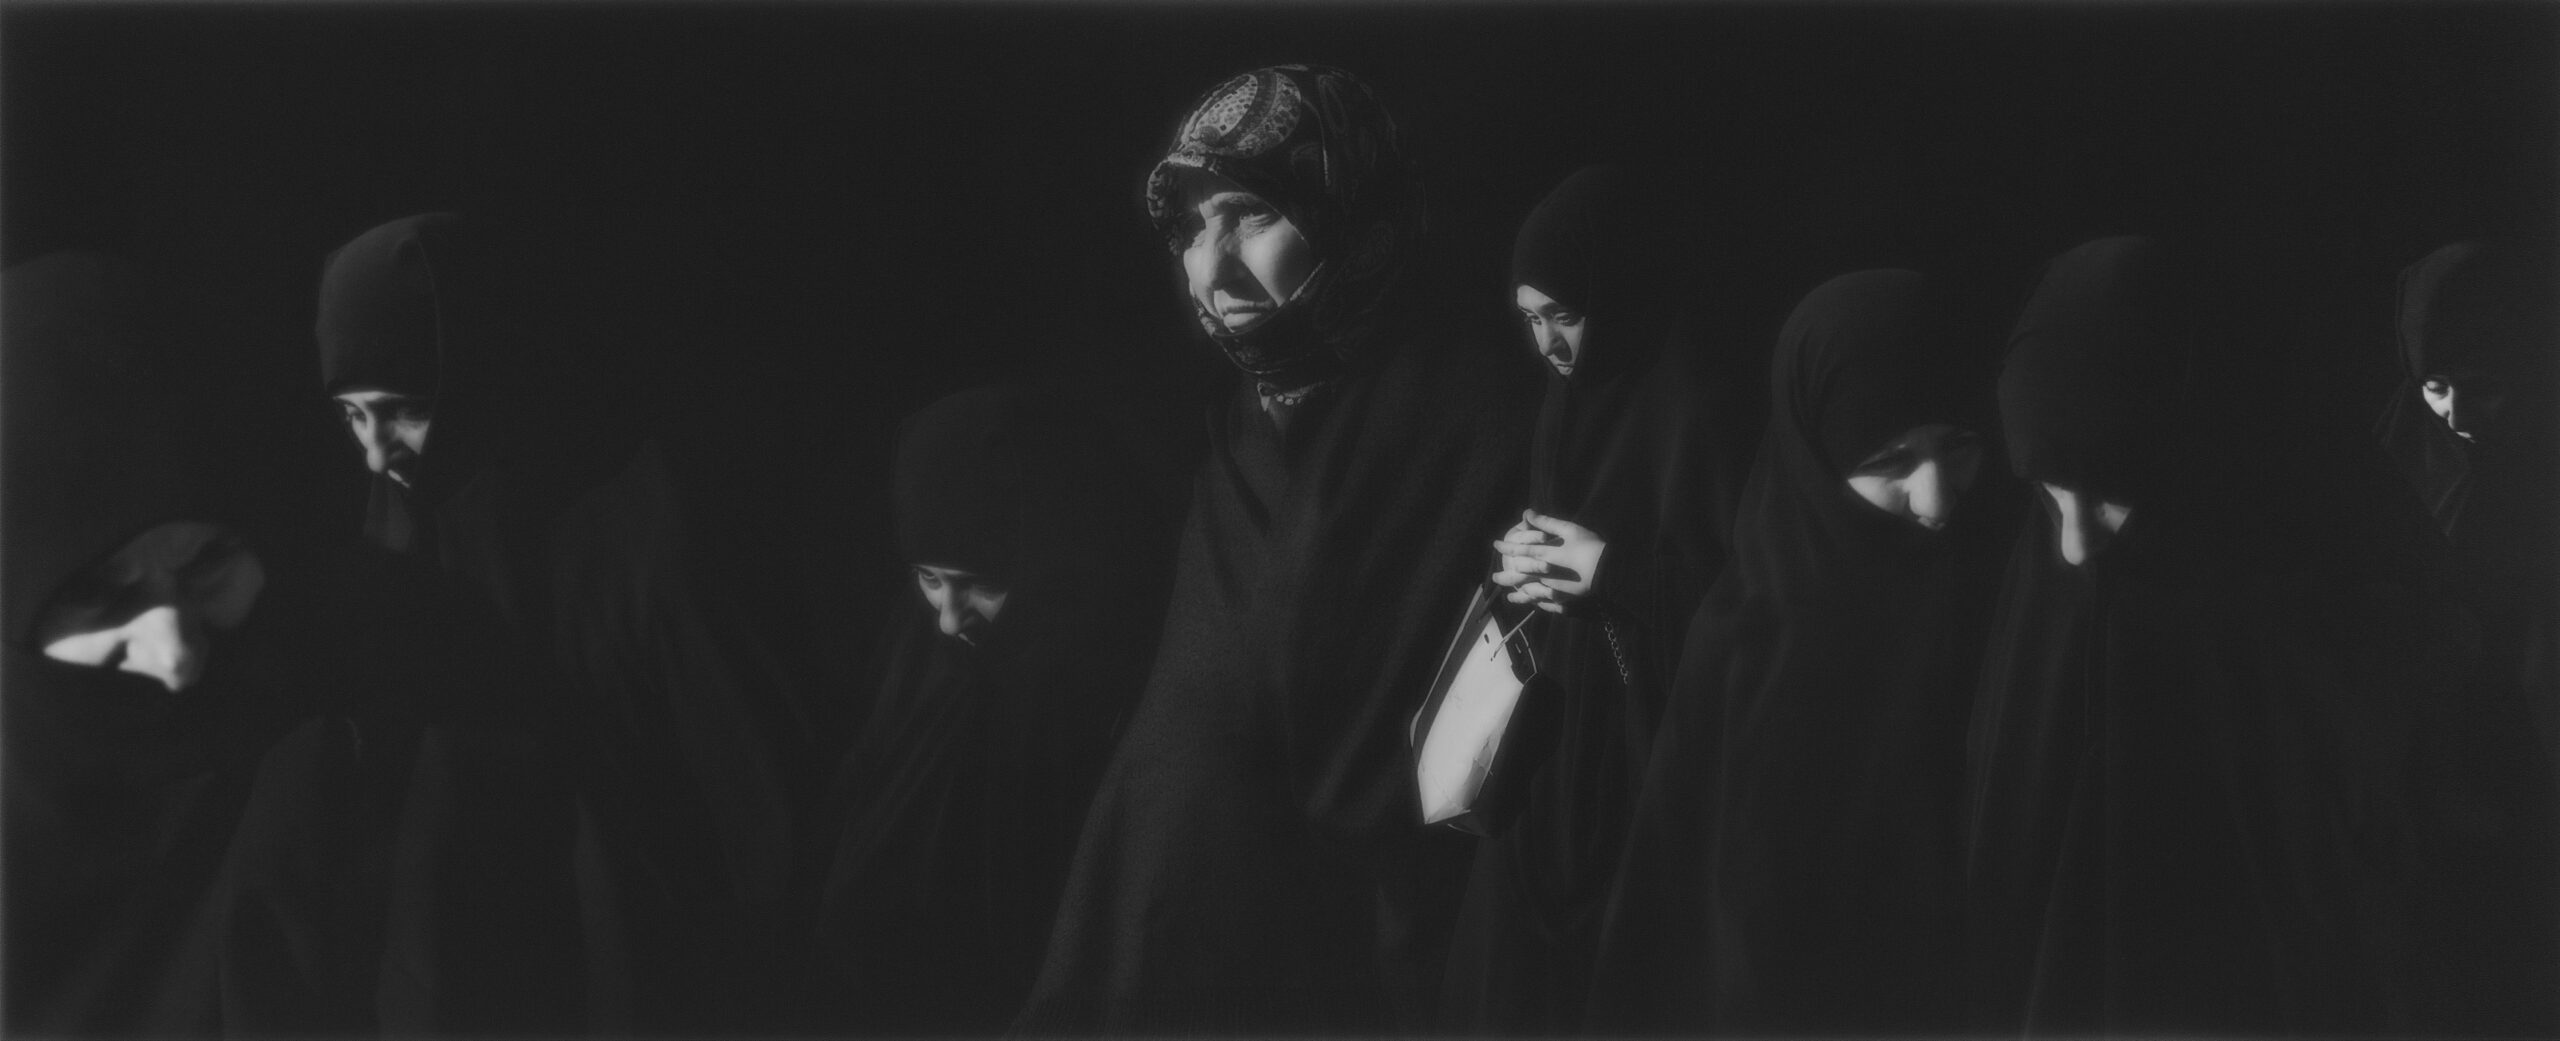 Et billede taget af Esa Ylijaasko, på billedet er en samling af kvinder, syriske flygtnige.